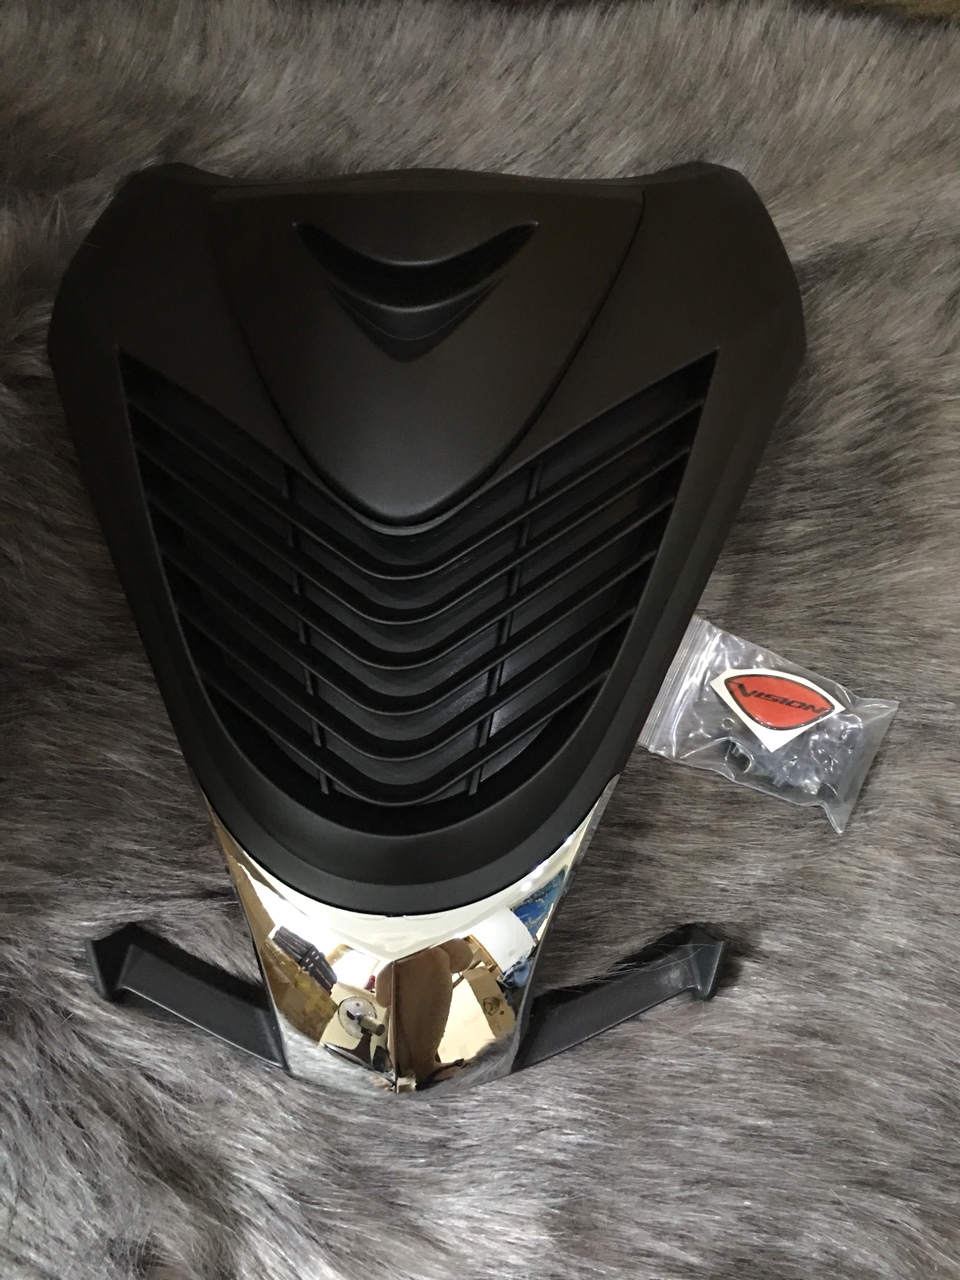 Mặt nạ xe máy Honda Vision 2014  2020 Chế Kiểu SH Ý  E3 Audio Miền Nam